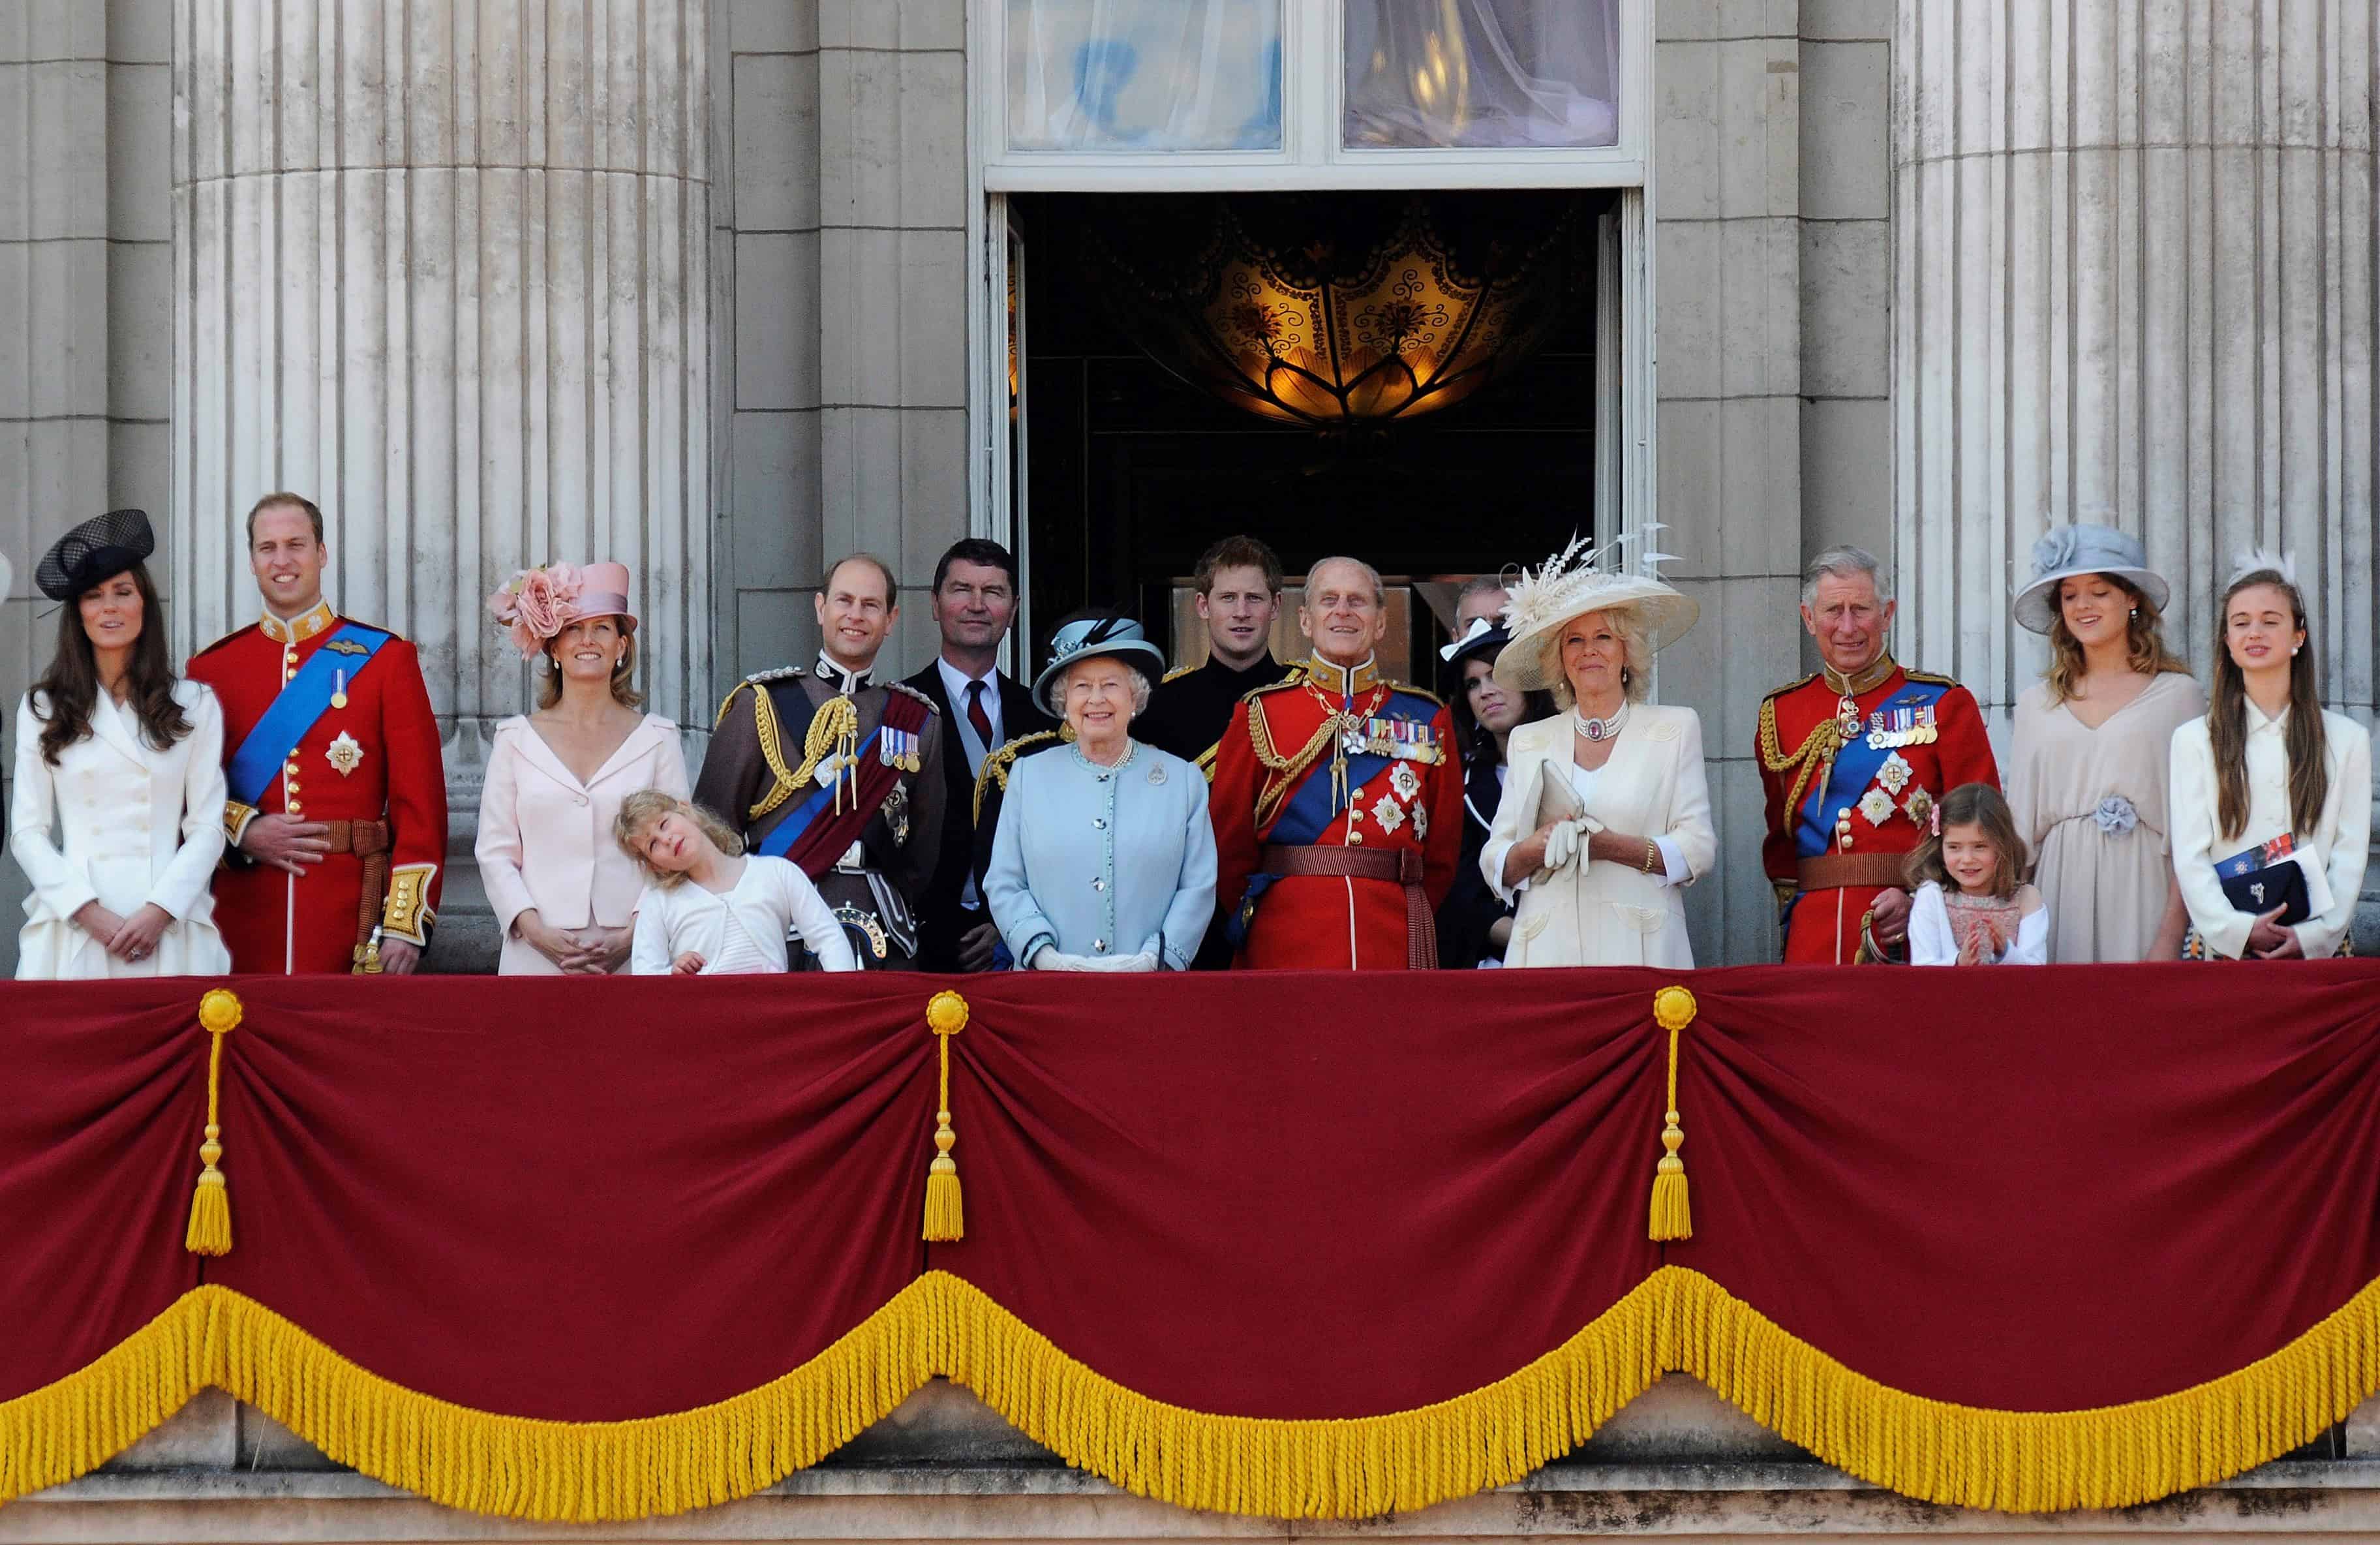 LONDRES (REINO UNIDO), 11/06/2011. (Izda-dcha) Los duques de Cambridge, Catalina y Guillermo; los condes de Wessex, Sophie y Eduardo; el comandante Timothy Laurence, esposo de la princesa Ana; la reina Isabel II de Inglaterra, el príncipe Enrique, el duque de Edimburgo; la princesa Eugenia, la duquesa de Cornualles y el príncipe de Gales presiden la exhibición aérea desde el balcón principal del palacio de Buckingham durante la tradicional ceremonia del Trooping the Colour con la que se conmemoró el 85 cumpleaños de la soberana, en Londres (Reino Unido), el día 11 de junio de 2011.